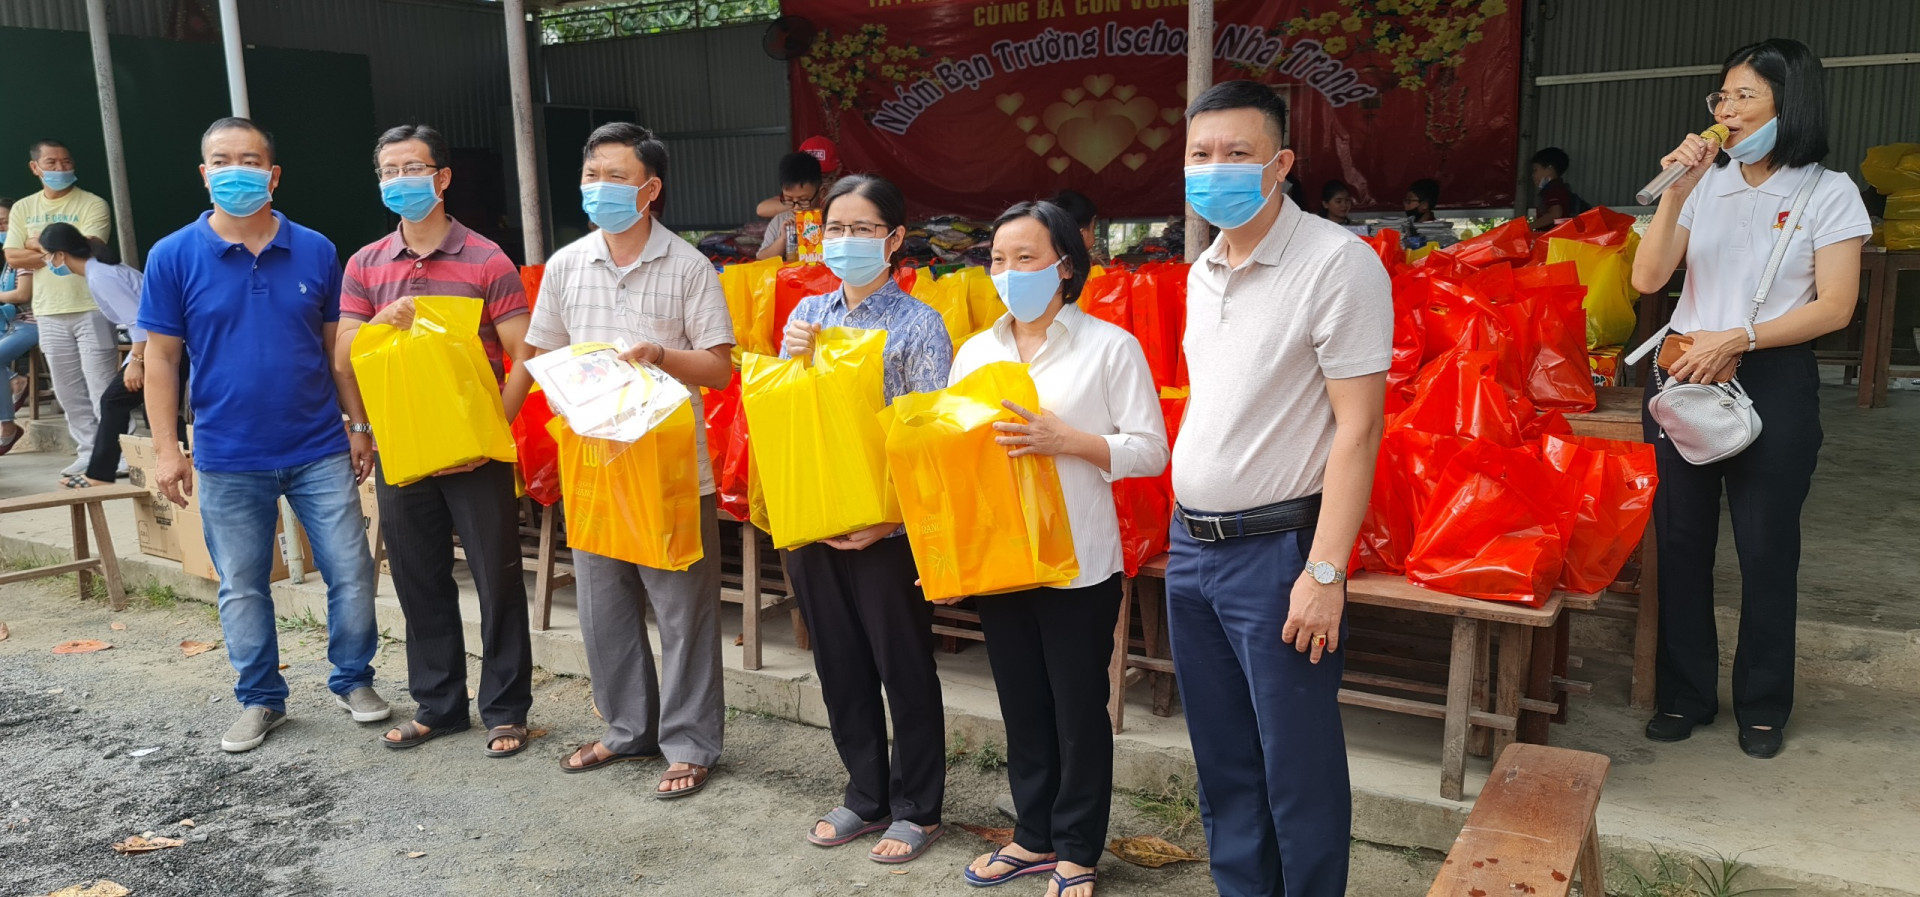 Đại diện Nhóm bạn Trường iSchool Nha Trang trao quà cho các gia đình gặp nhiều khó khăn